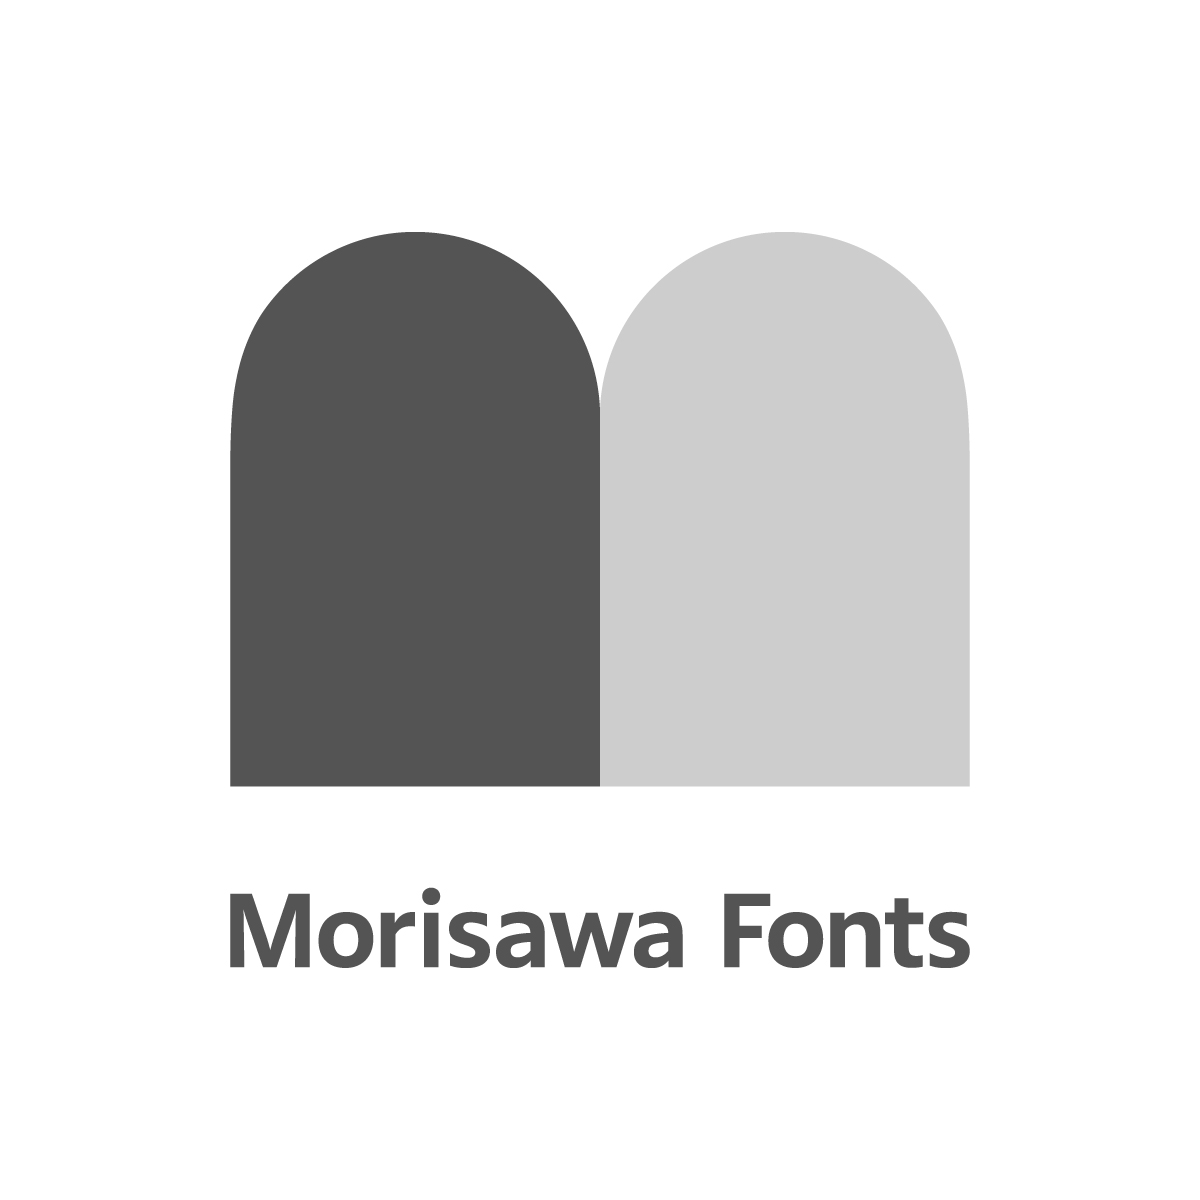 Morisawa Fonts ロゴ3 モノクロ1